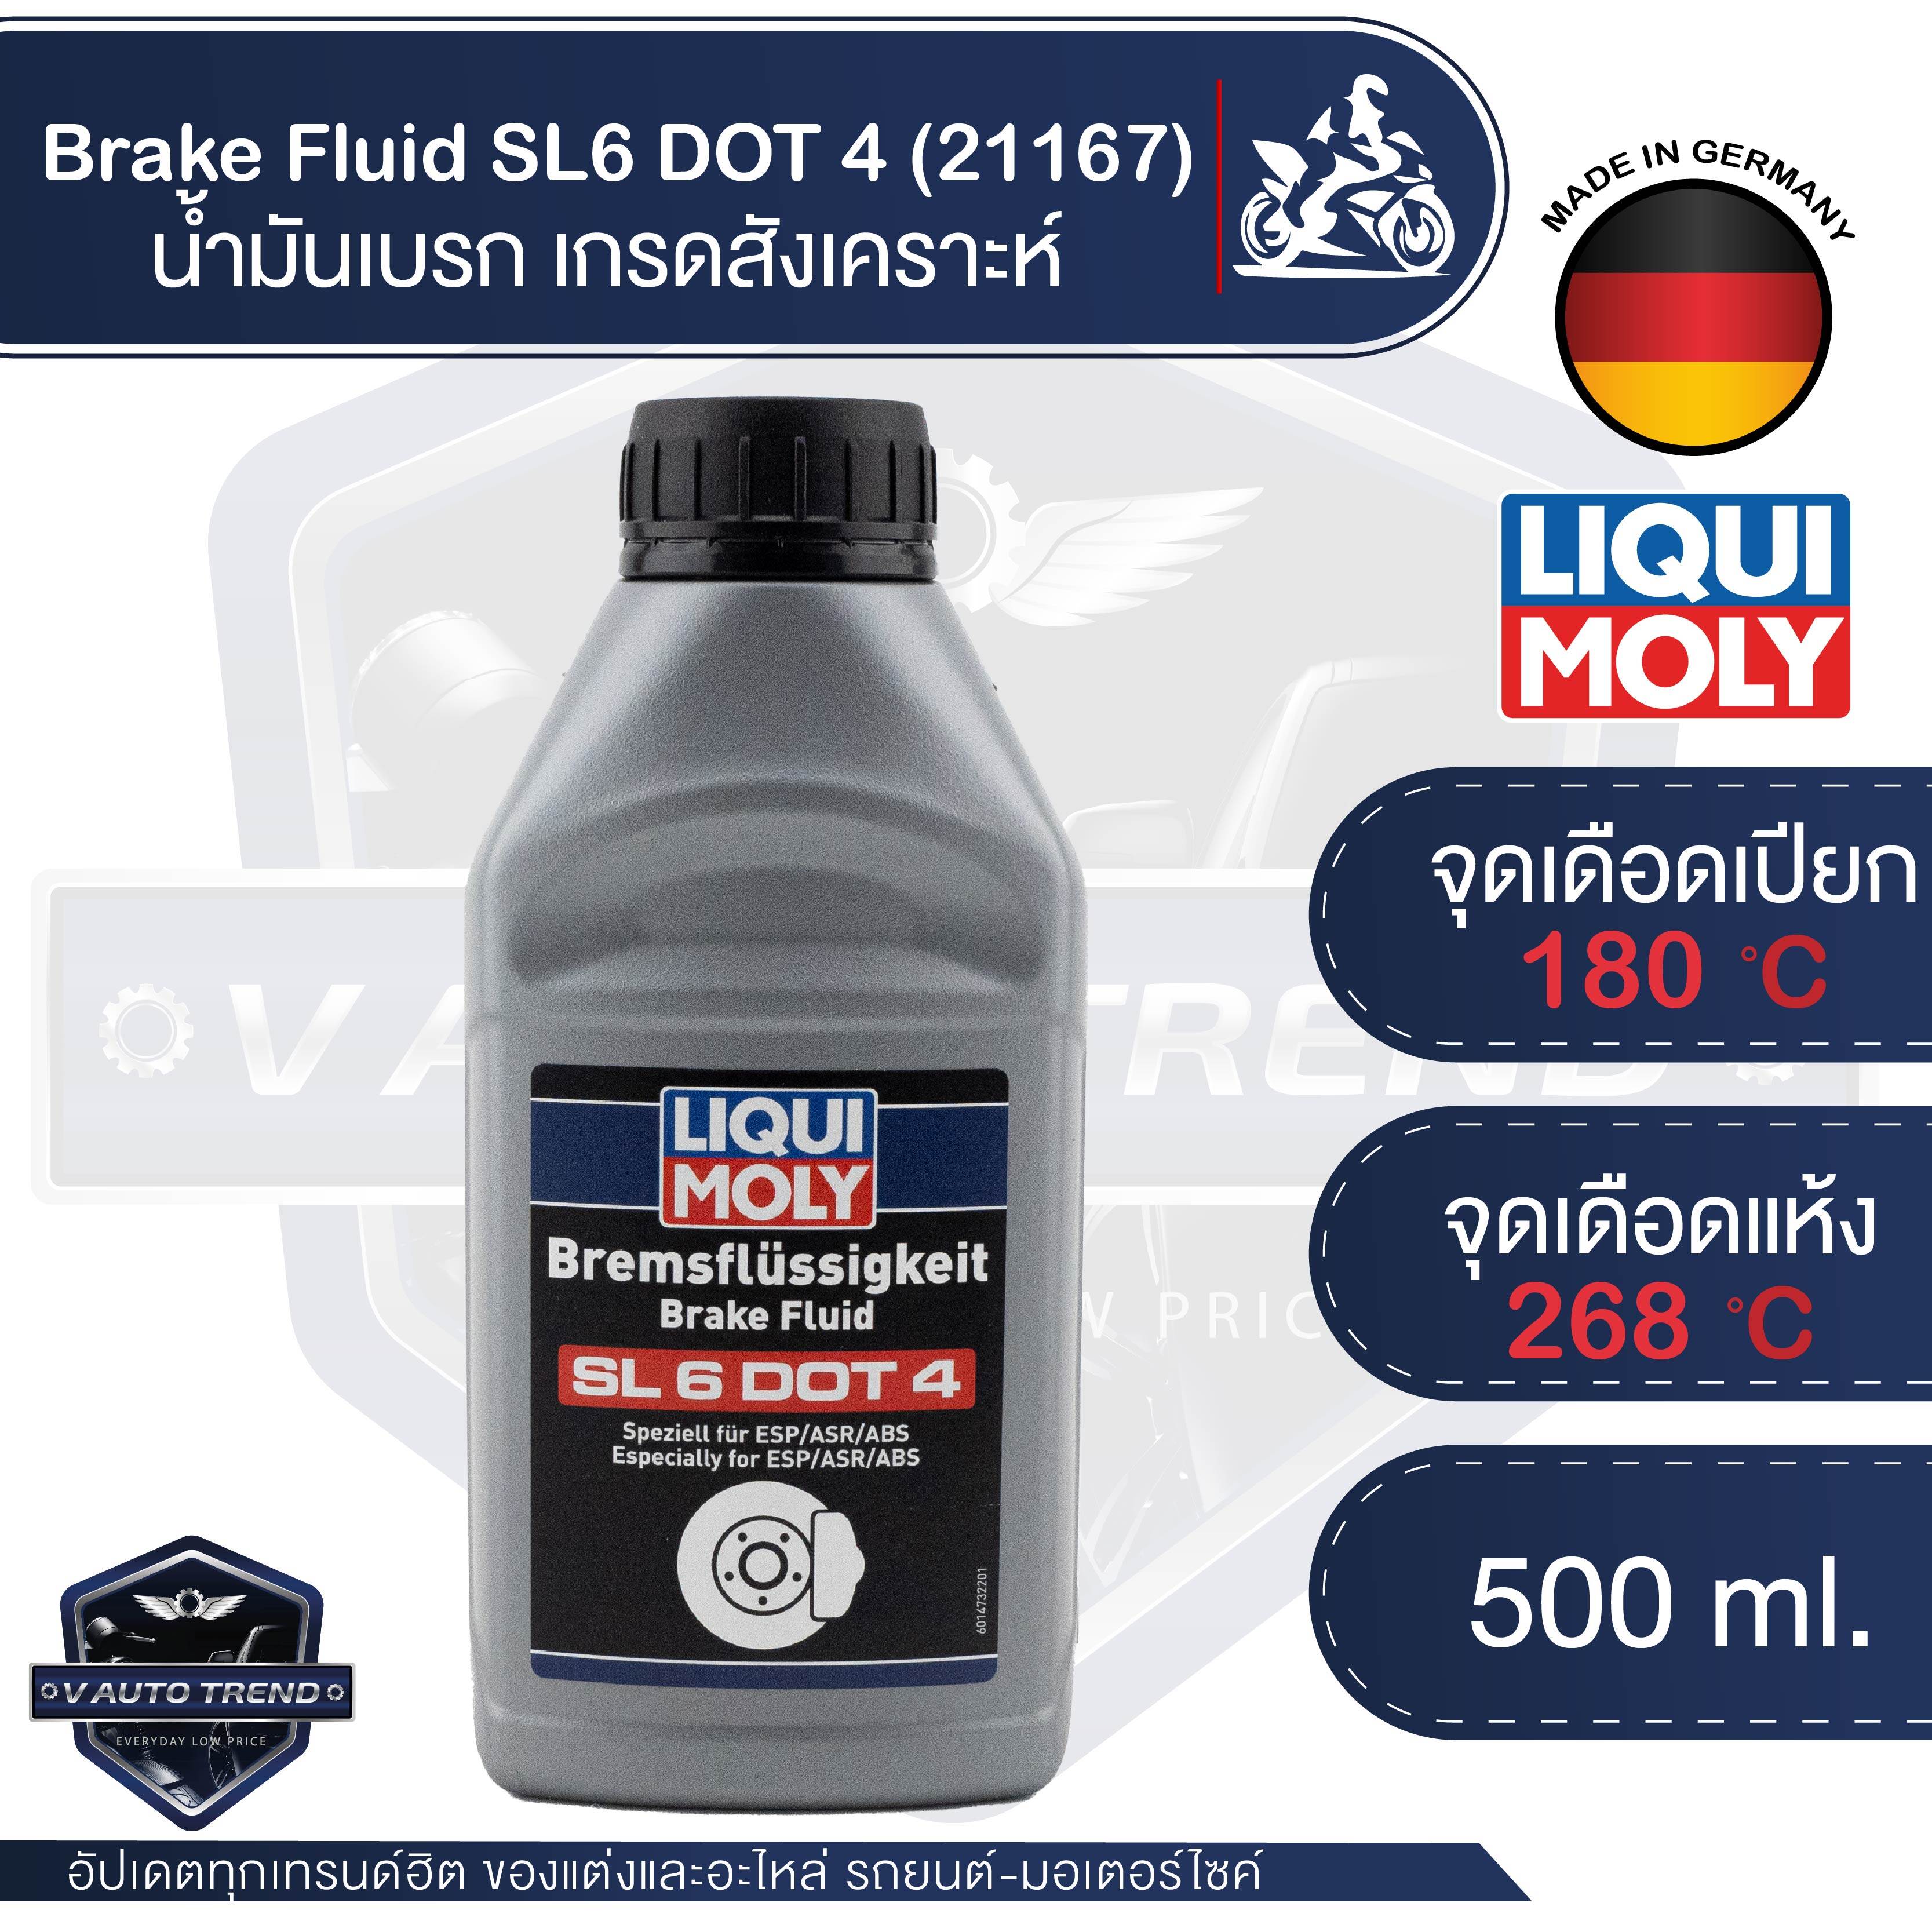 น้ำมันเบรค LIQUI MOLY Brake Fluid SL6 DOT 4 น้ำมันเบรคเกรดสังเคราะห์  กล้าขับขี่ได้อย่างมั่นใจ ในทุกสภาพอากาศ ขนาด 500 ml.